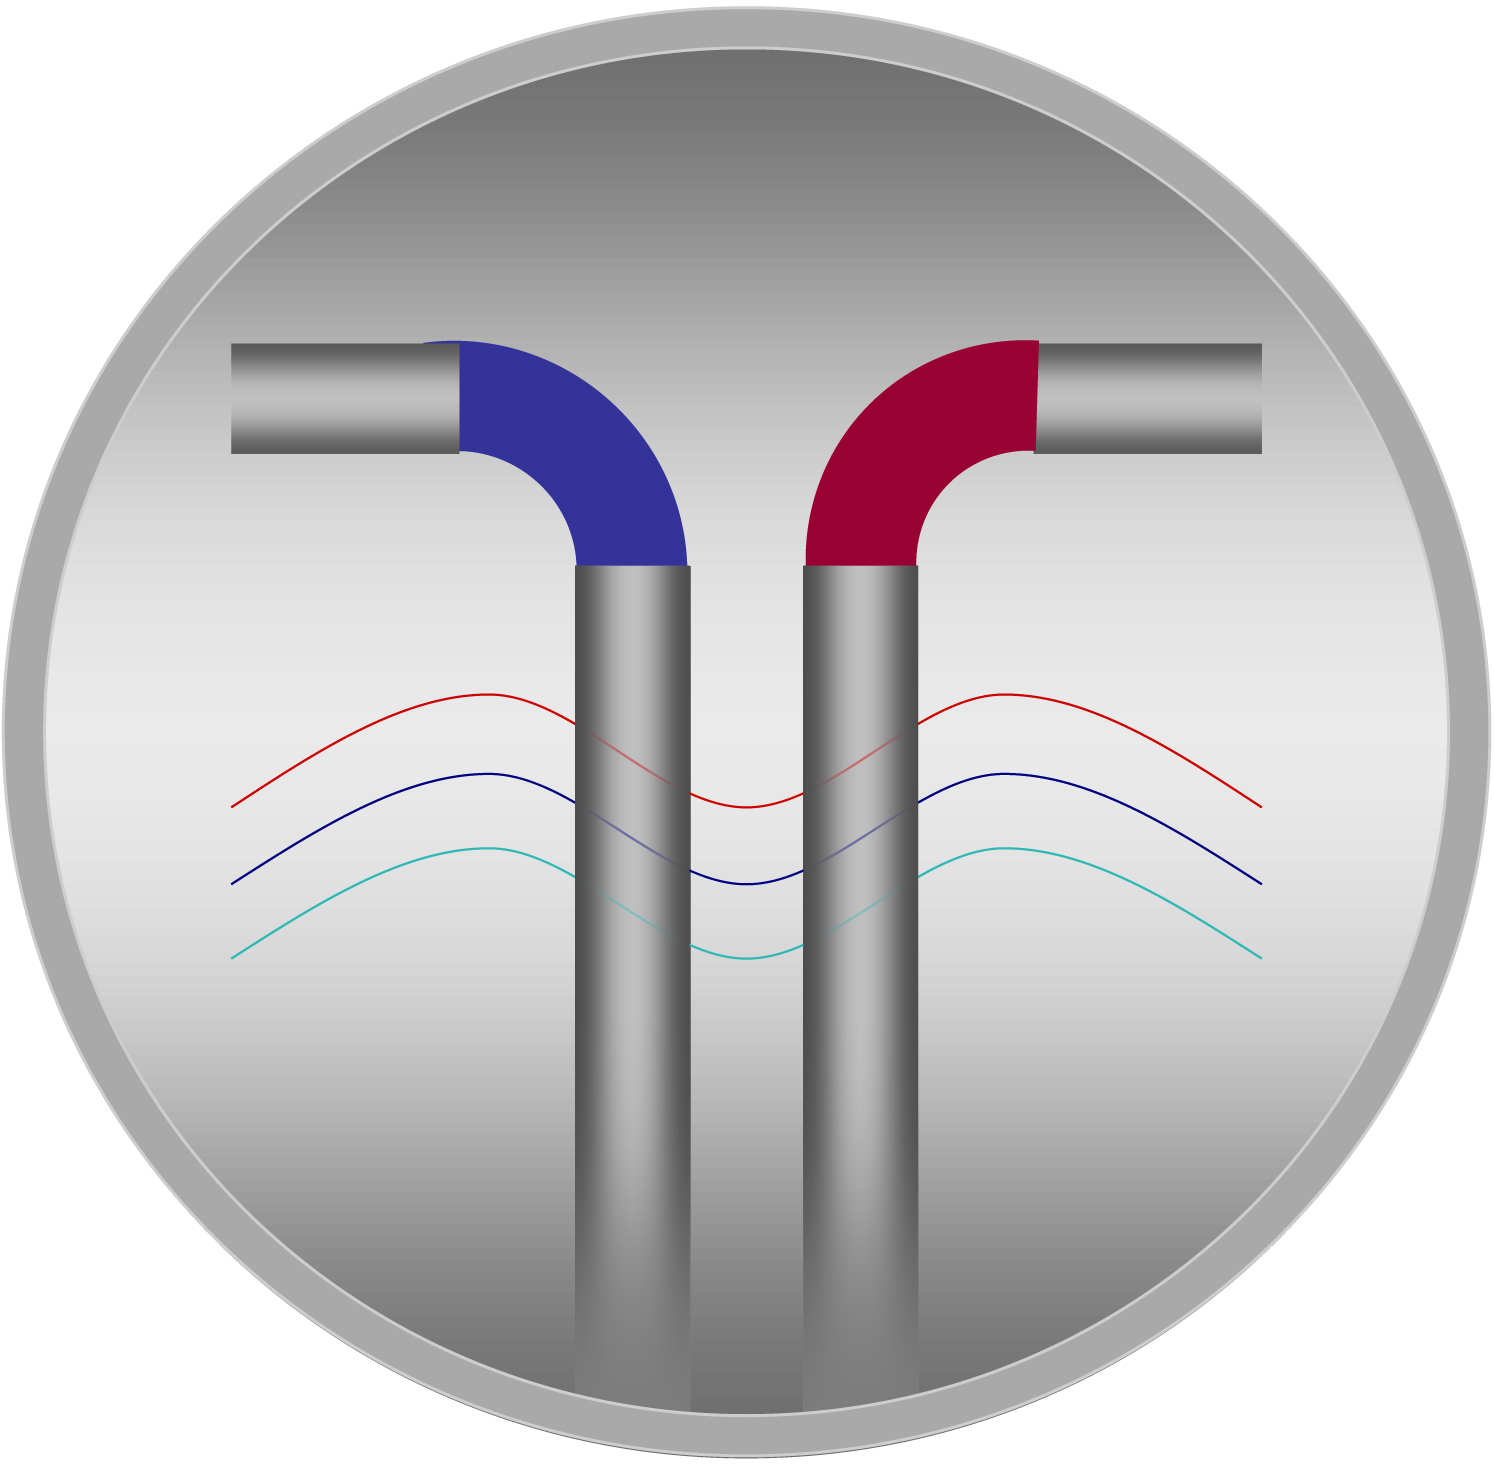 Εργαστήριο Θερμοϋδραυλικής Ανάλυσης και Πολυφασικών Ροών (ΕΘΑΠΟΡ) - Logo